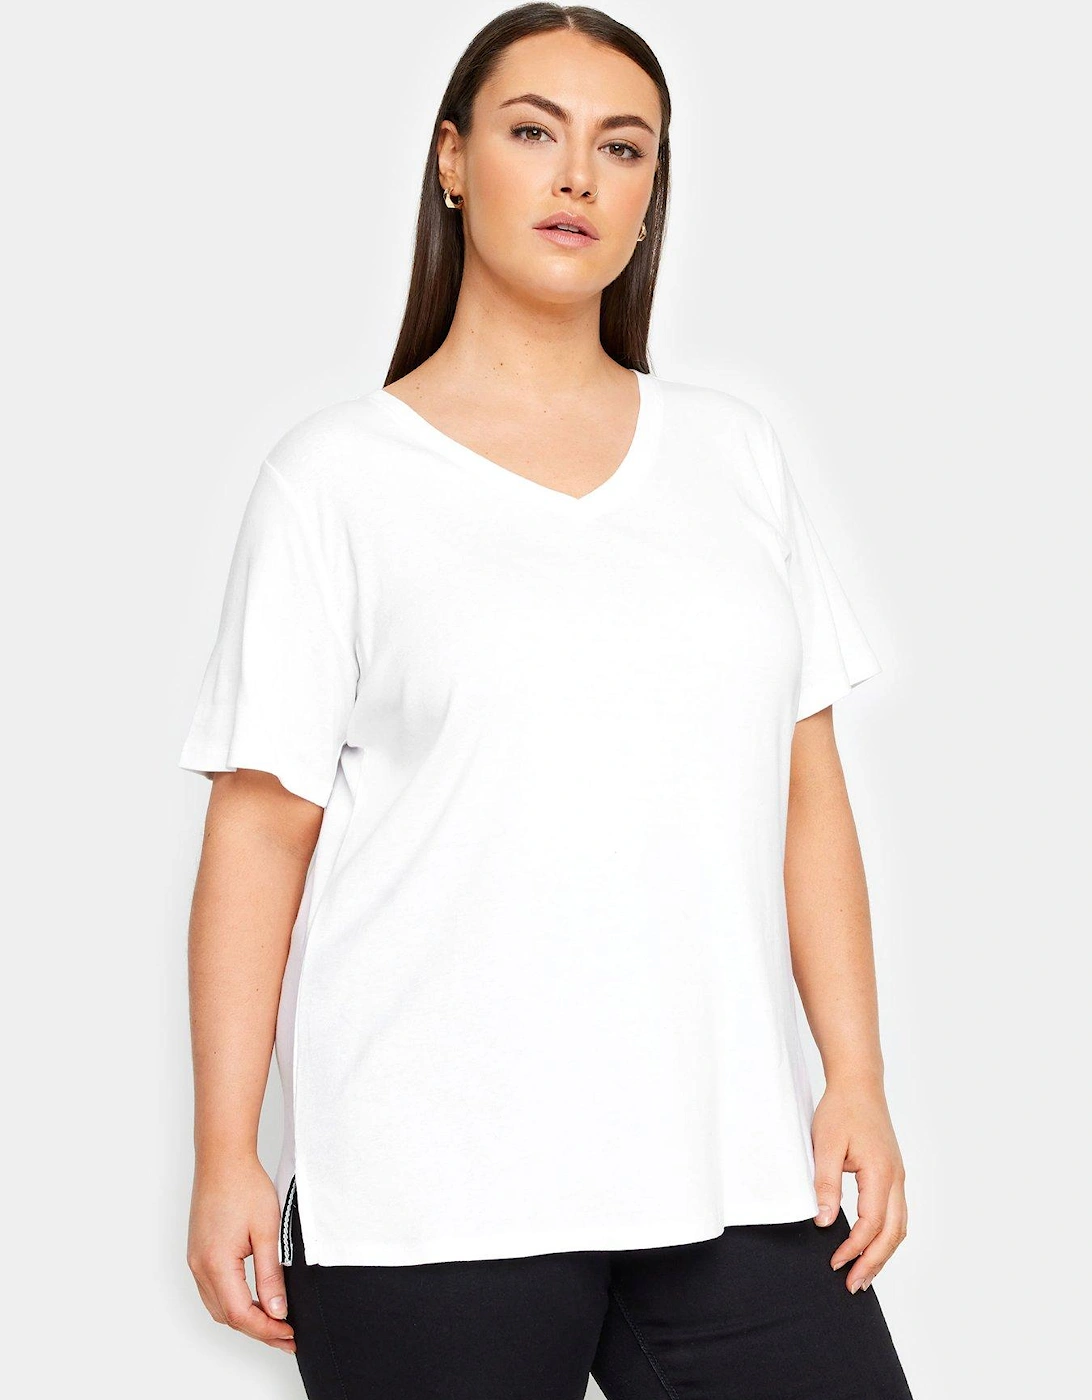 V-neck T-shirt - White, 2 of 1